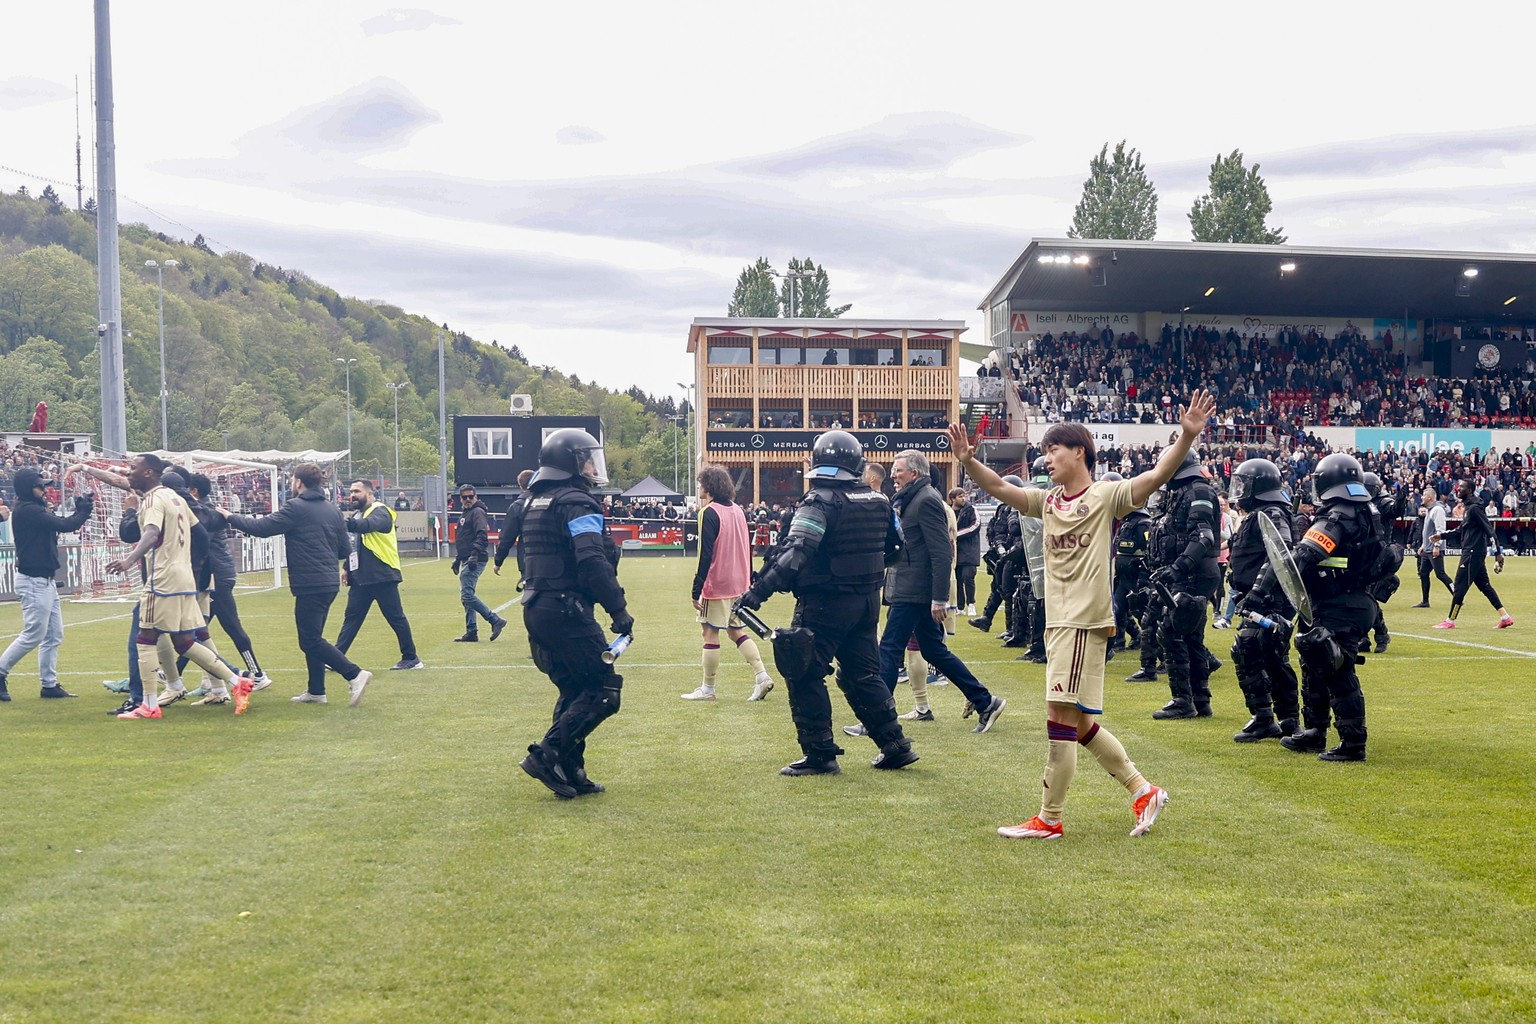 Servettes Takuma Nishimura versucht die Fans zu beruhigen nach tumultartigen Szenen auf dem Spielfeld nach dem Halbfinal des Schweizer Fussball Cups zwischen dem FC Winterthur und Servette FC am Sonnt ...